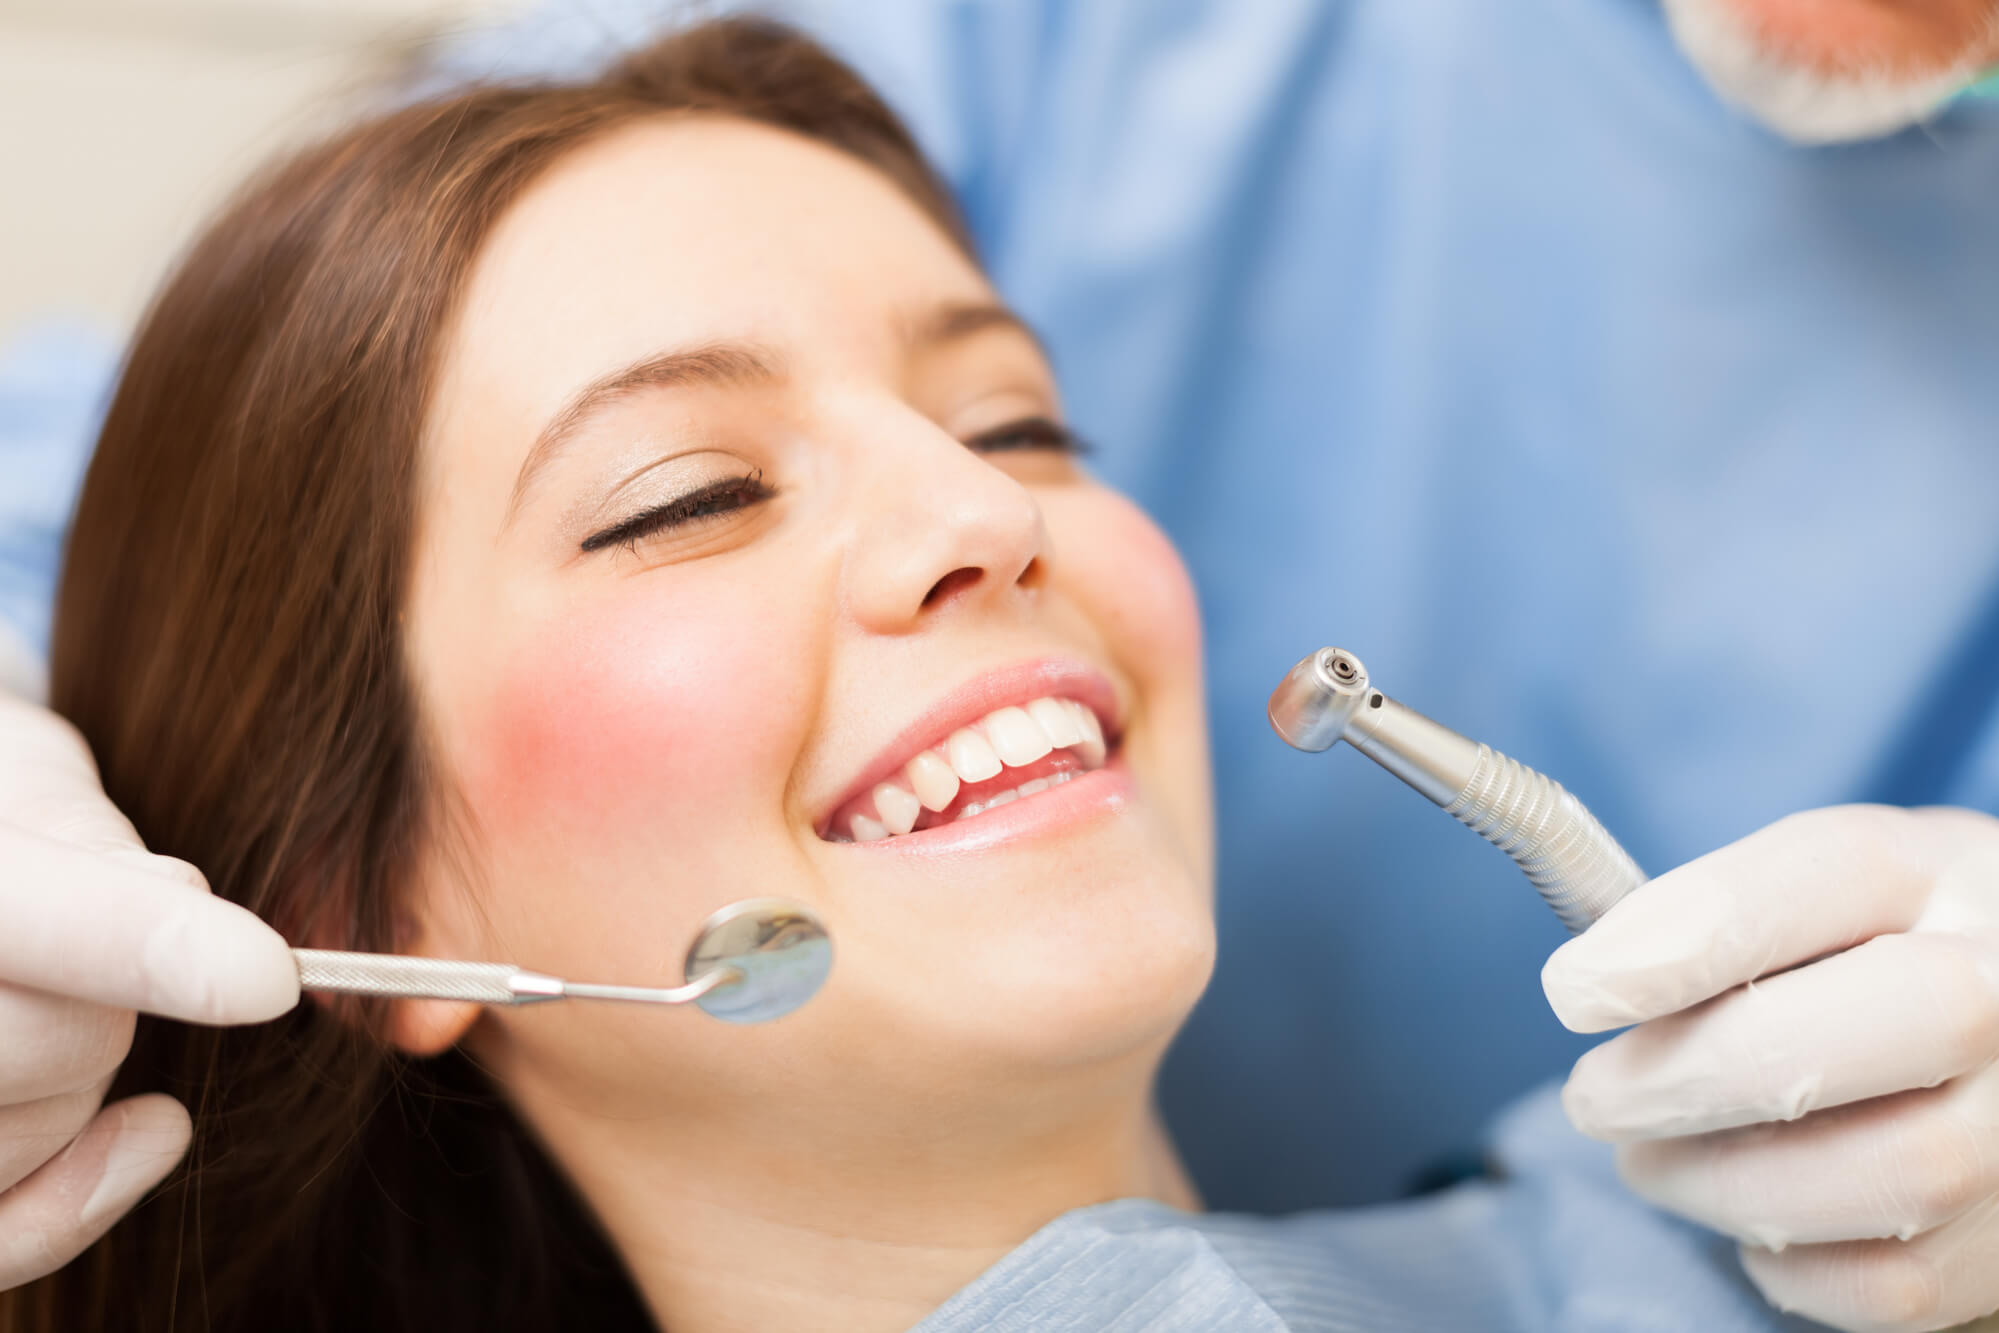 pain-free dentistry in Las Vegas dental cleaning